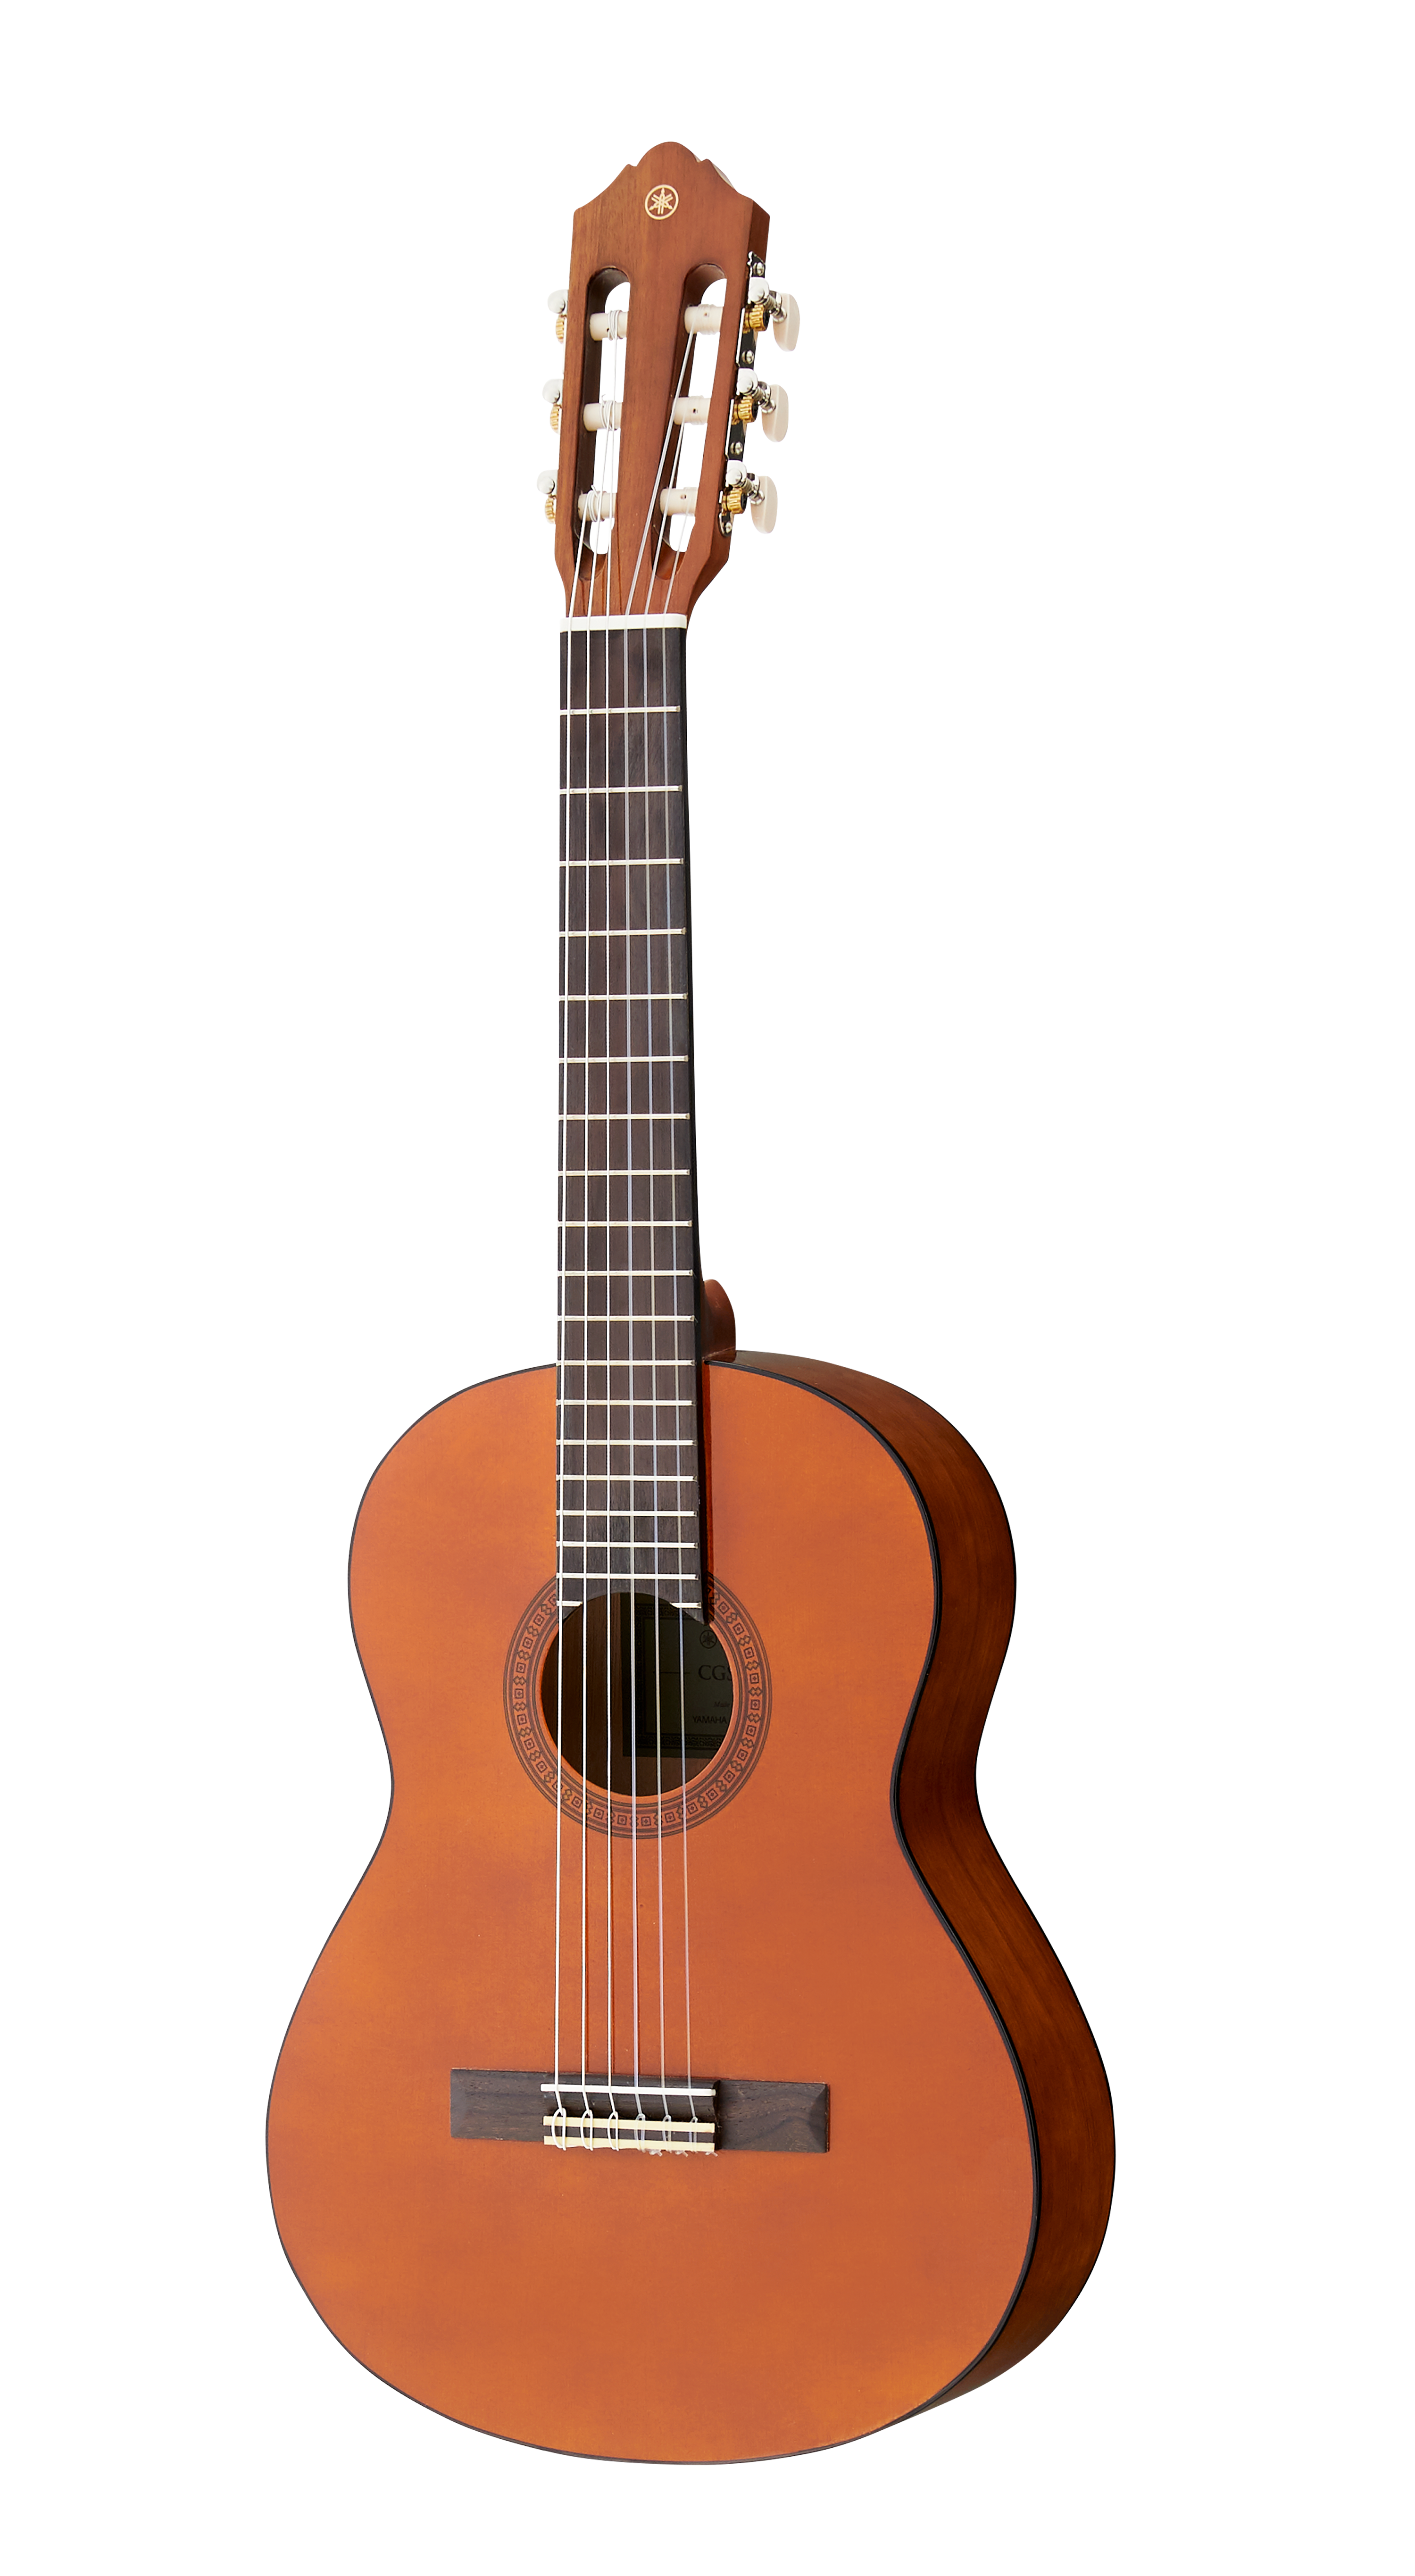 ヤマハ | ミニギター/ギタレレ™ - アコースティックギター - 概要